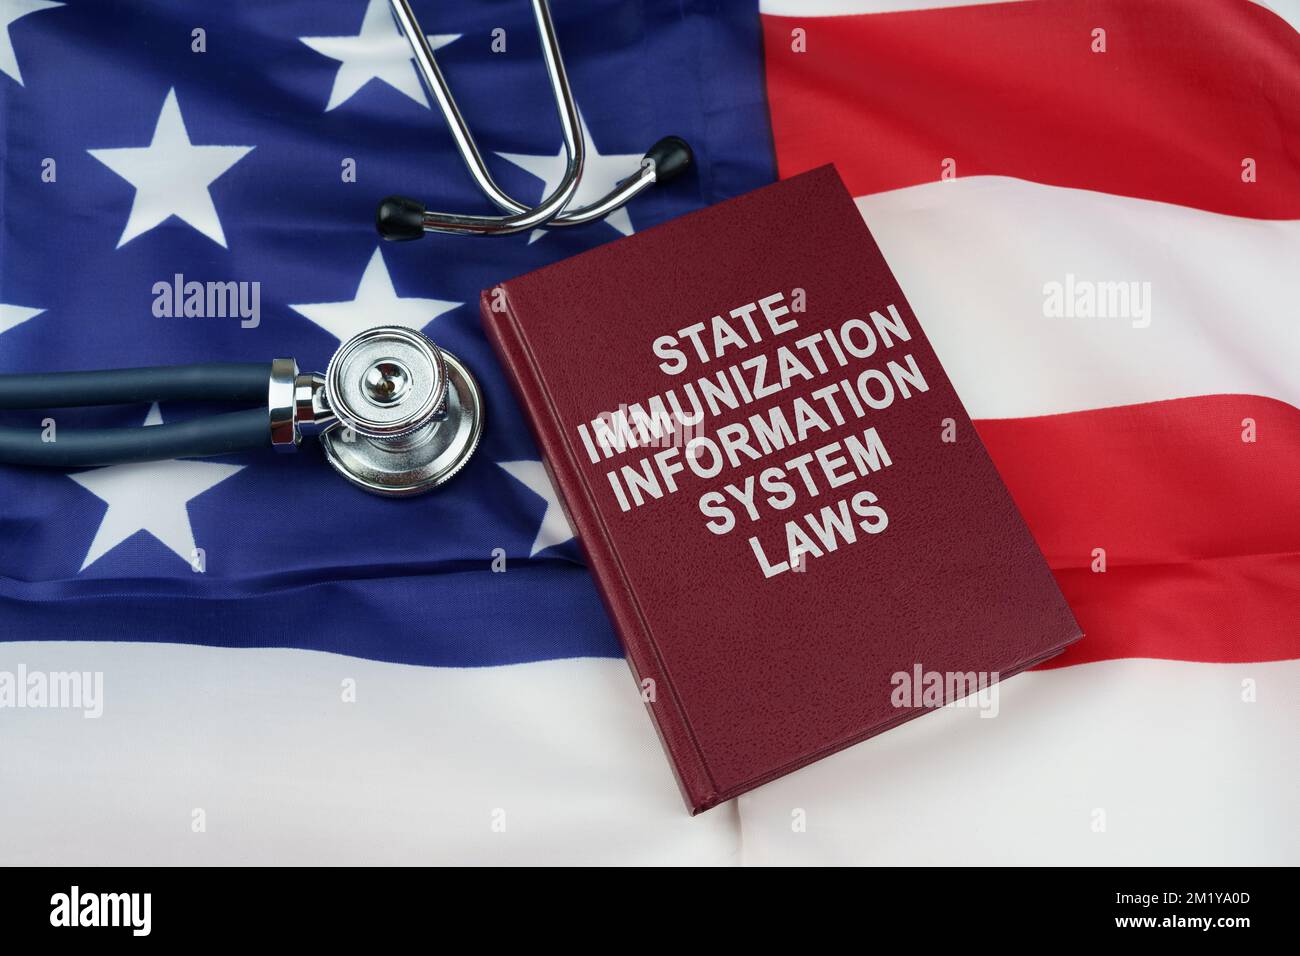 Concetto di legge. Sulla bandiera degli Stati Uniti si trova uno stetoscopio e un libro con l'iscrizione - state Immunization Information System Laws Foto Stock